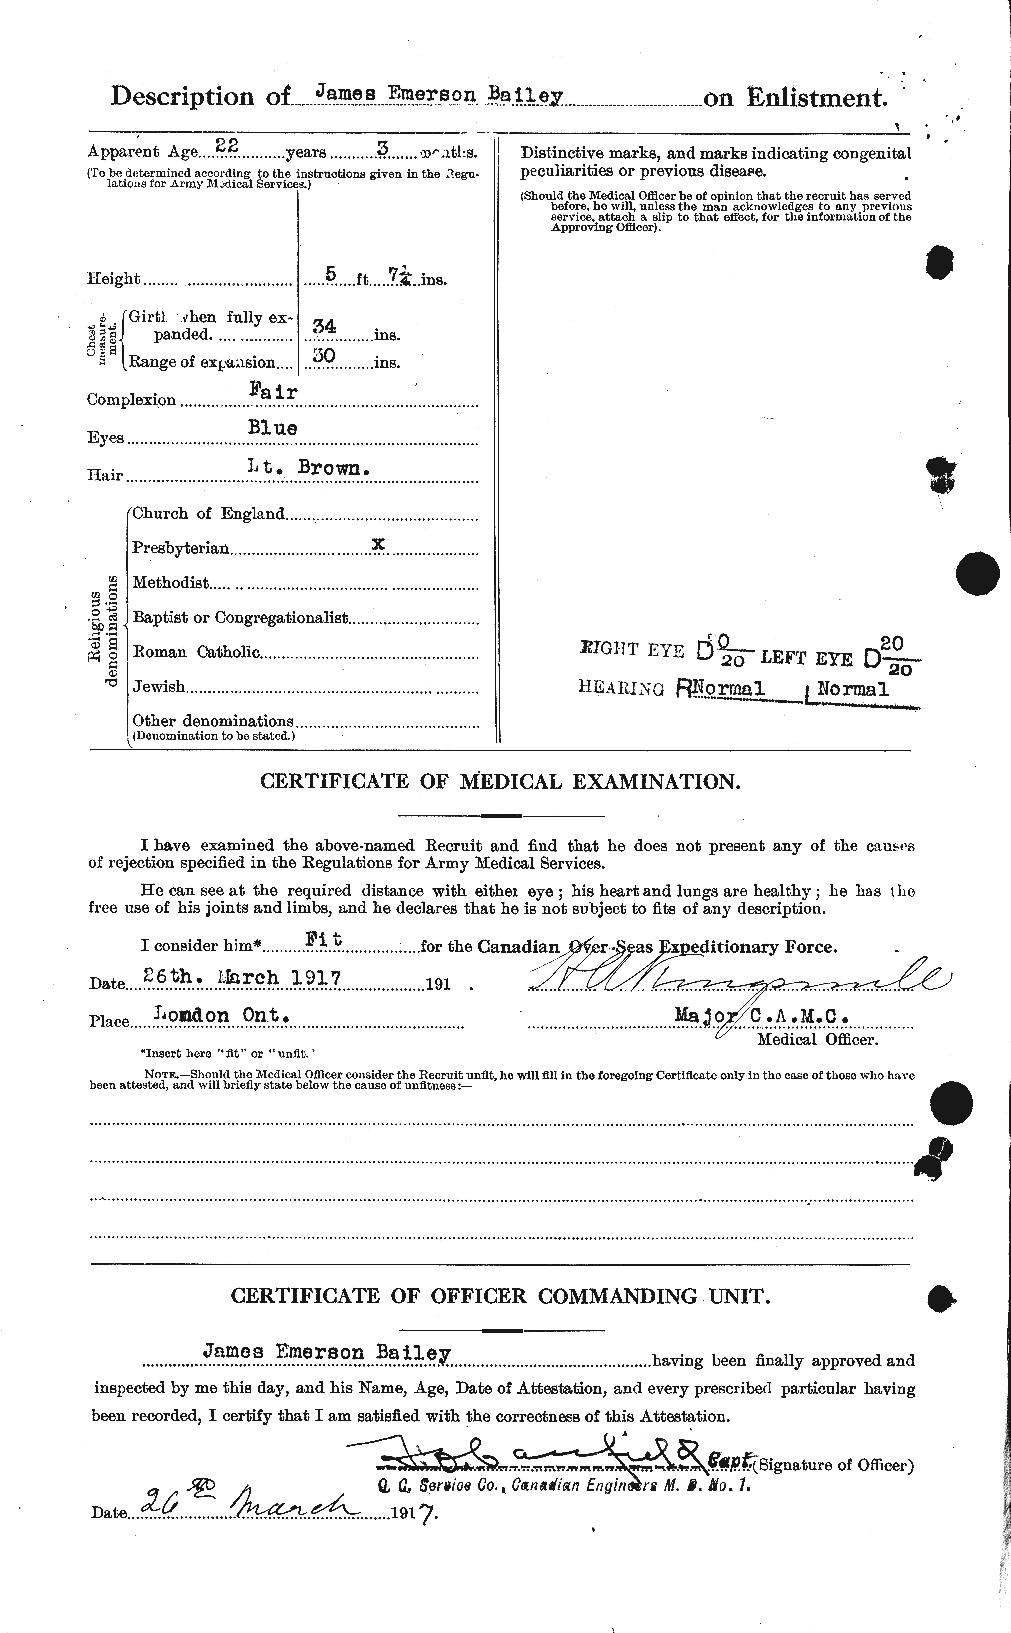 Dossiers du Personnel de la Première Guerre mondiale - CEC 218846b